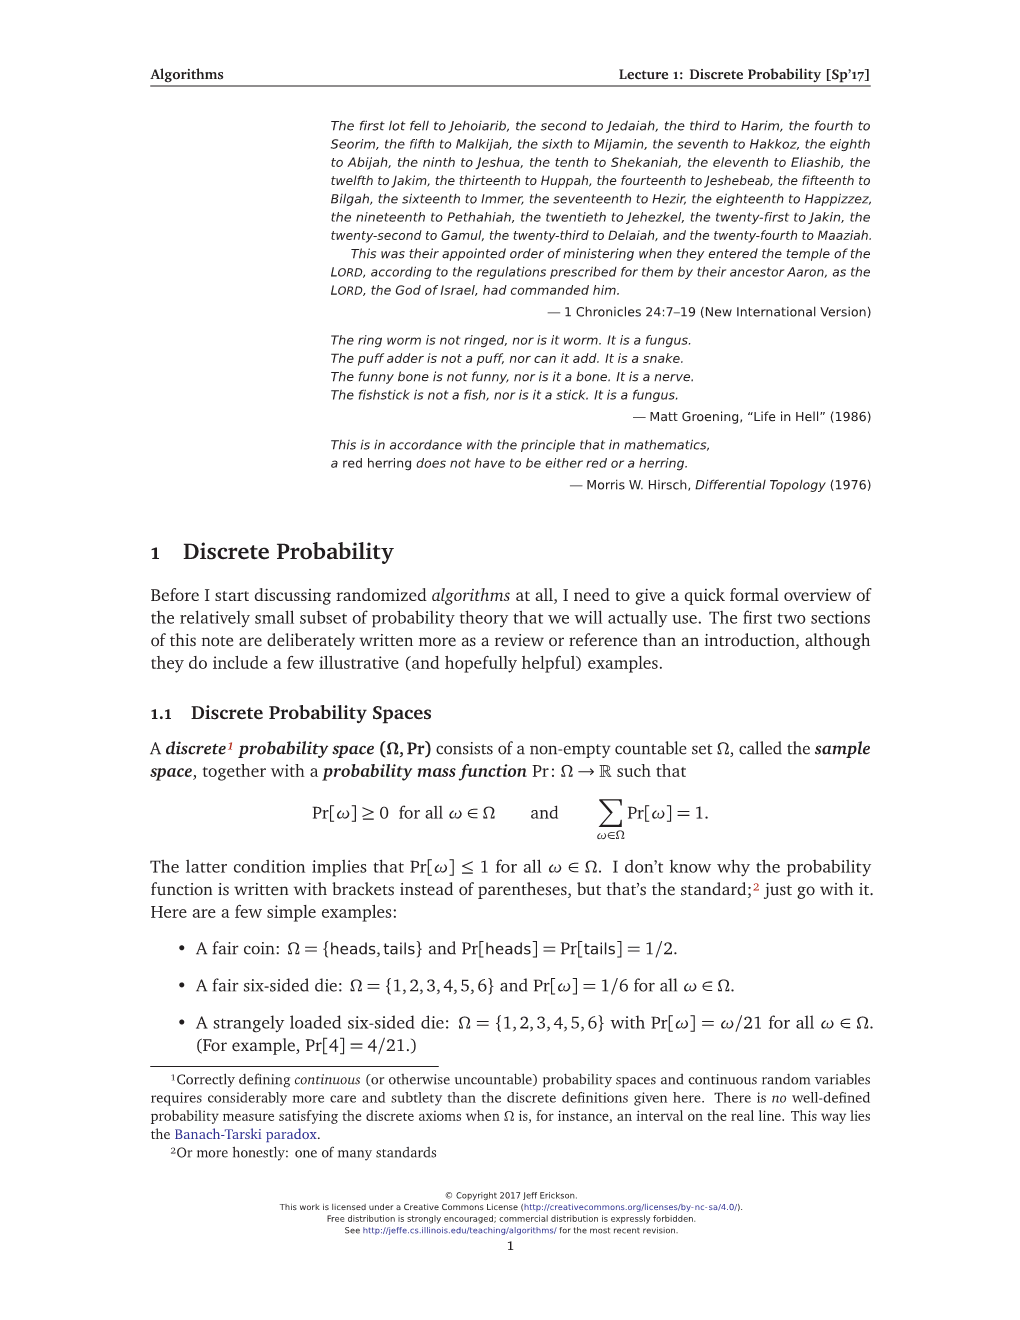 Discrete Probability [Sp’17]